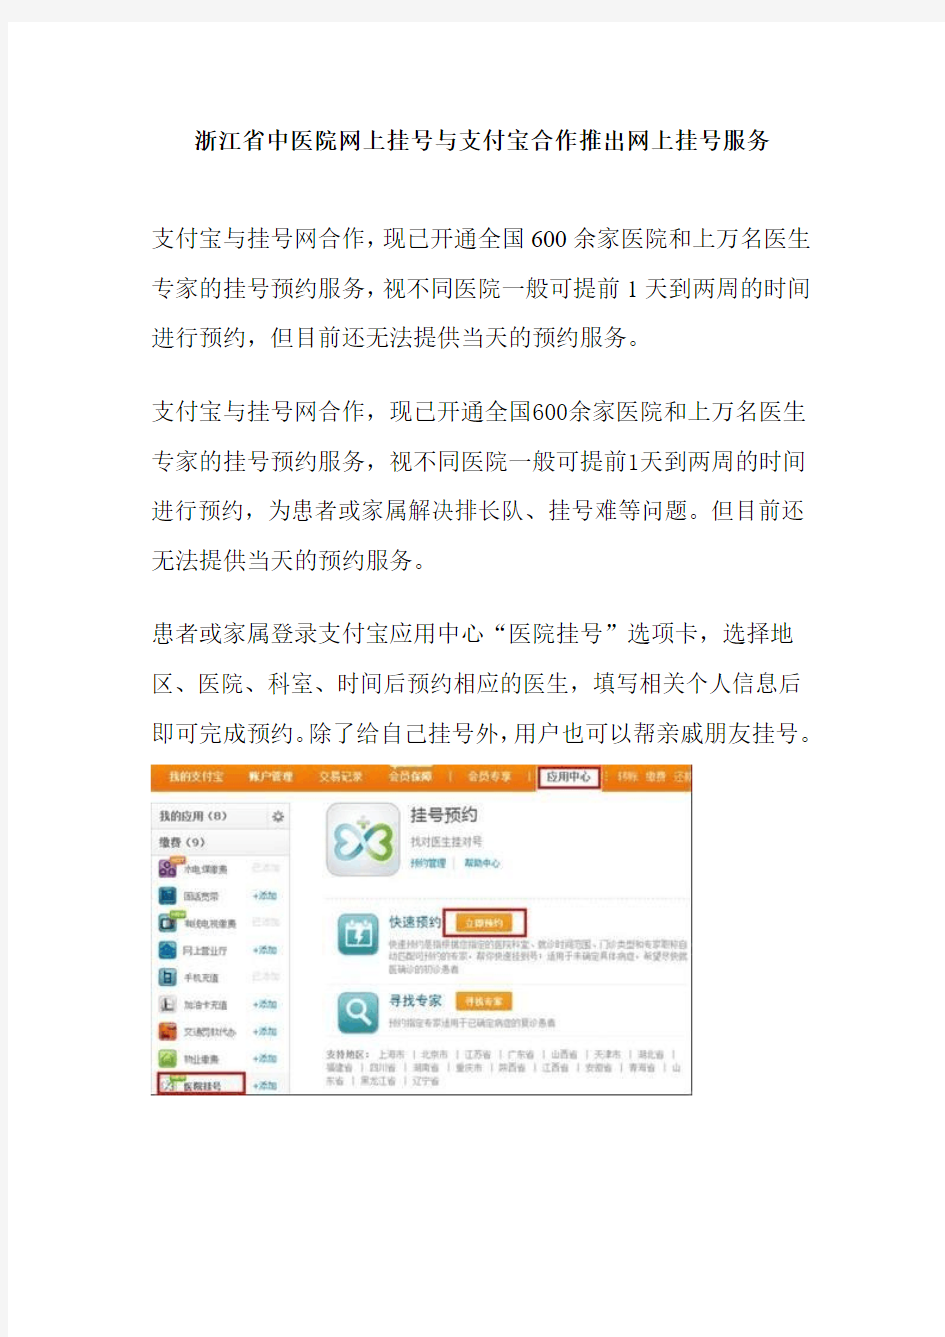 浙江省中医院网上挂号与支付宝合作推出网上挂号服务